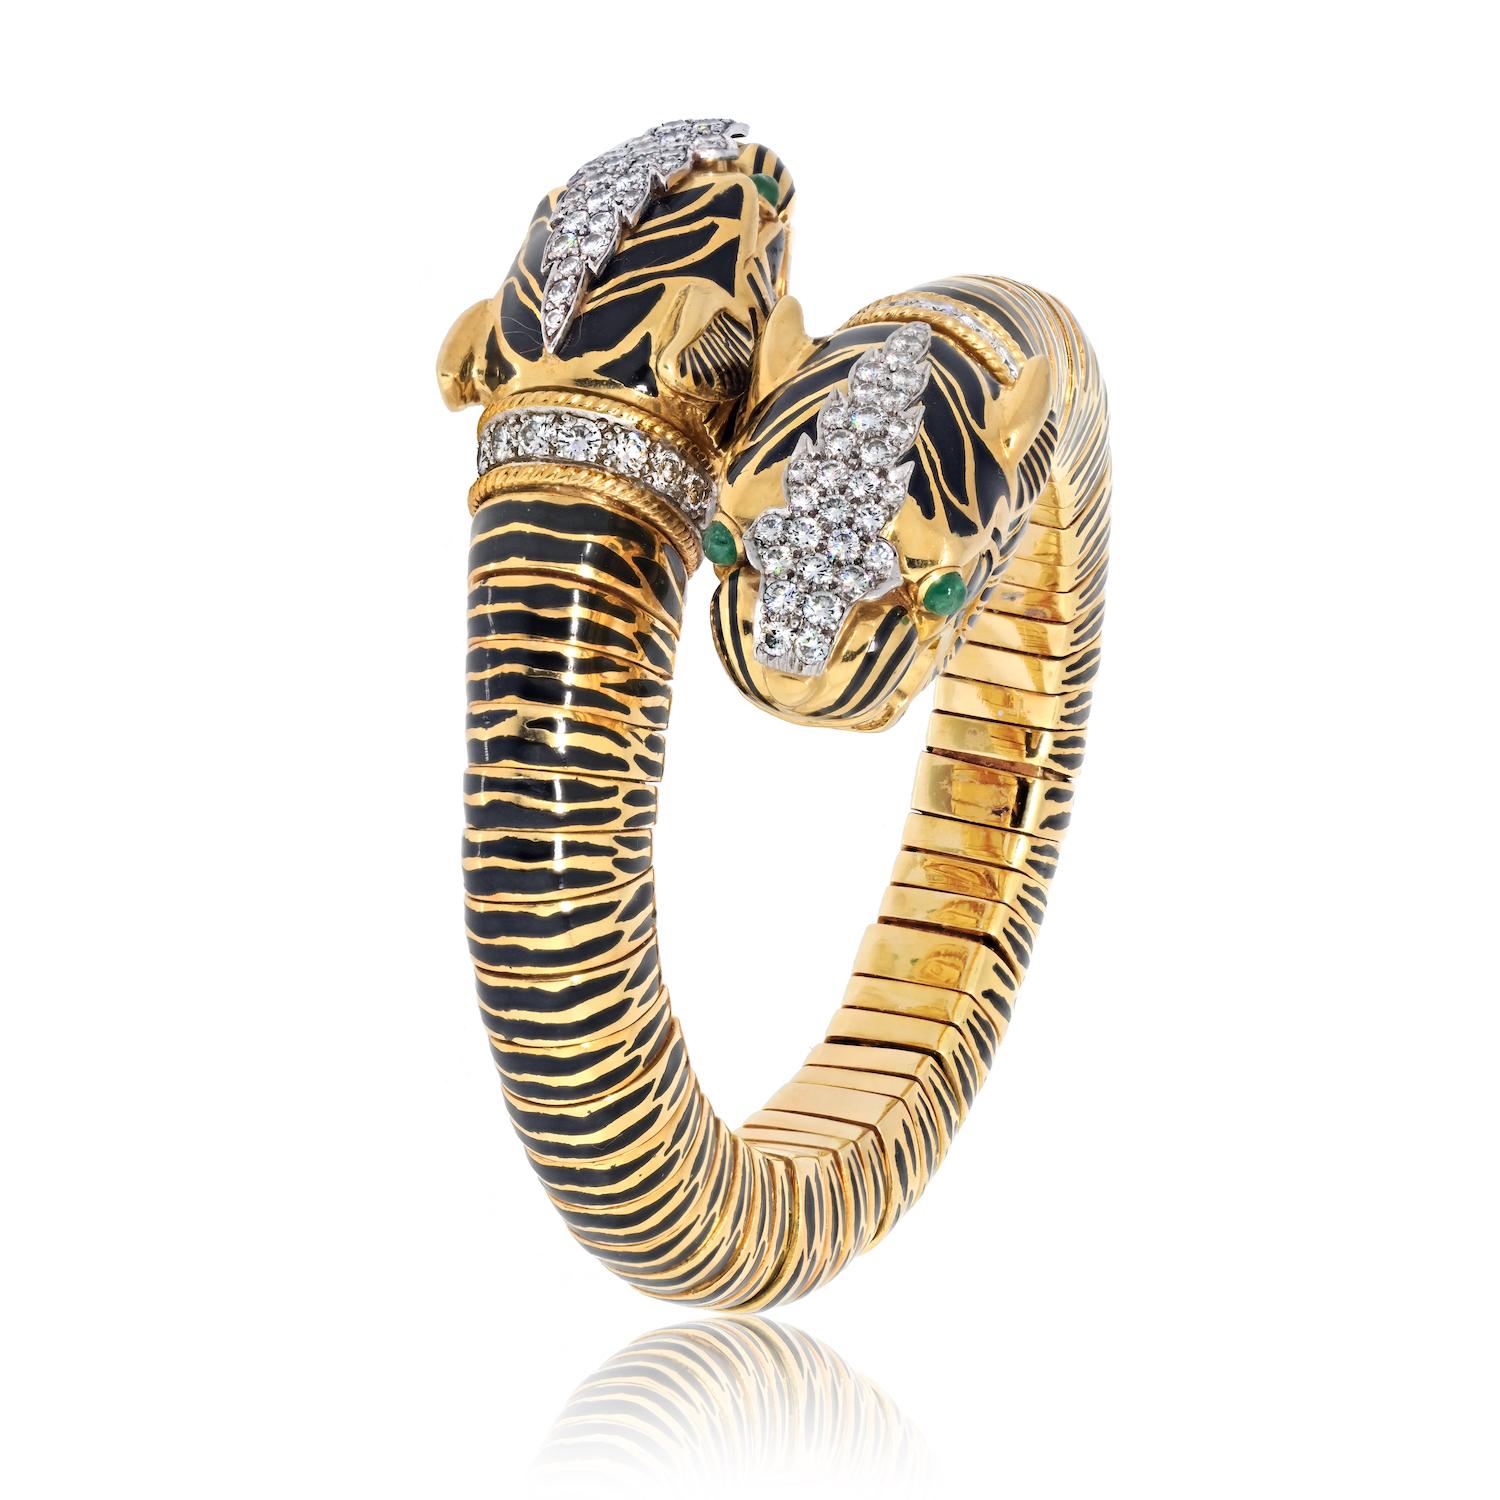 Eleg l'élégance sauvage de la Collection S de David Webb avec ce remarquable bracelet à double tête de tigre. Réalisé en or jaune 18 carats lustré, ce bracelet présente de saisissantes bandes d'émail noir qui ajoutent de la profondeur et du